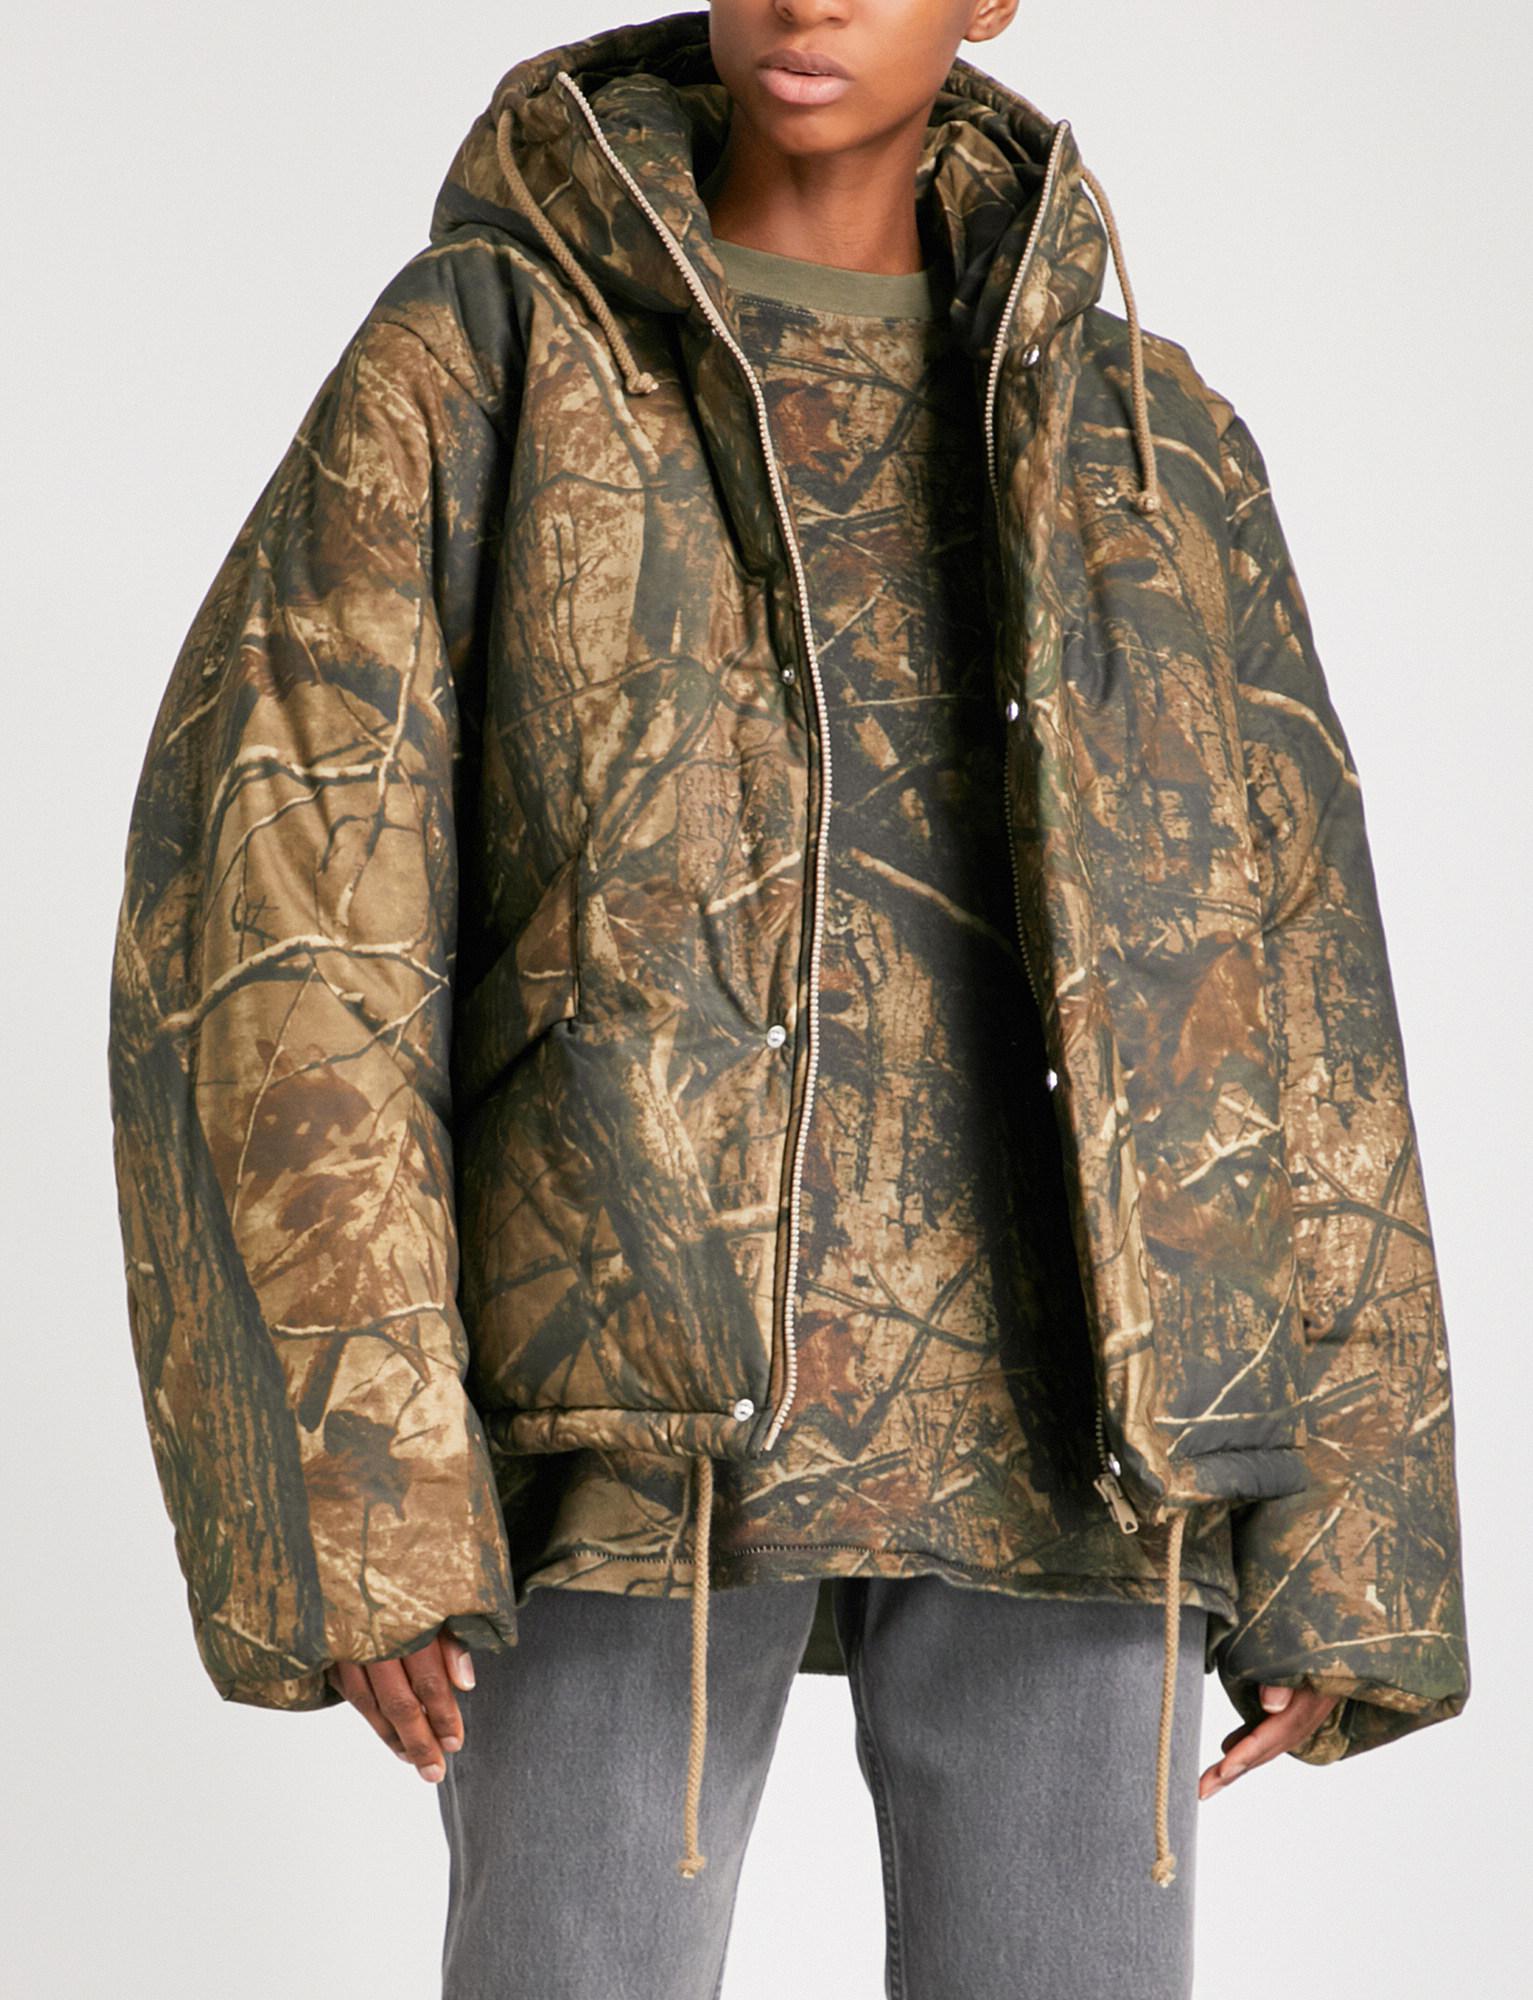 Yeezy Season 5 Oversized Boiled-wool Puffer Jacket in Brown for Men - Lyst